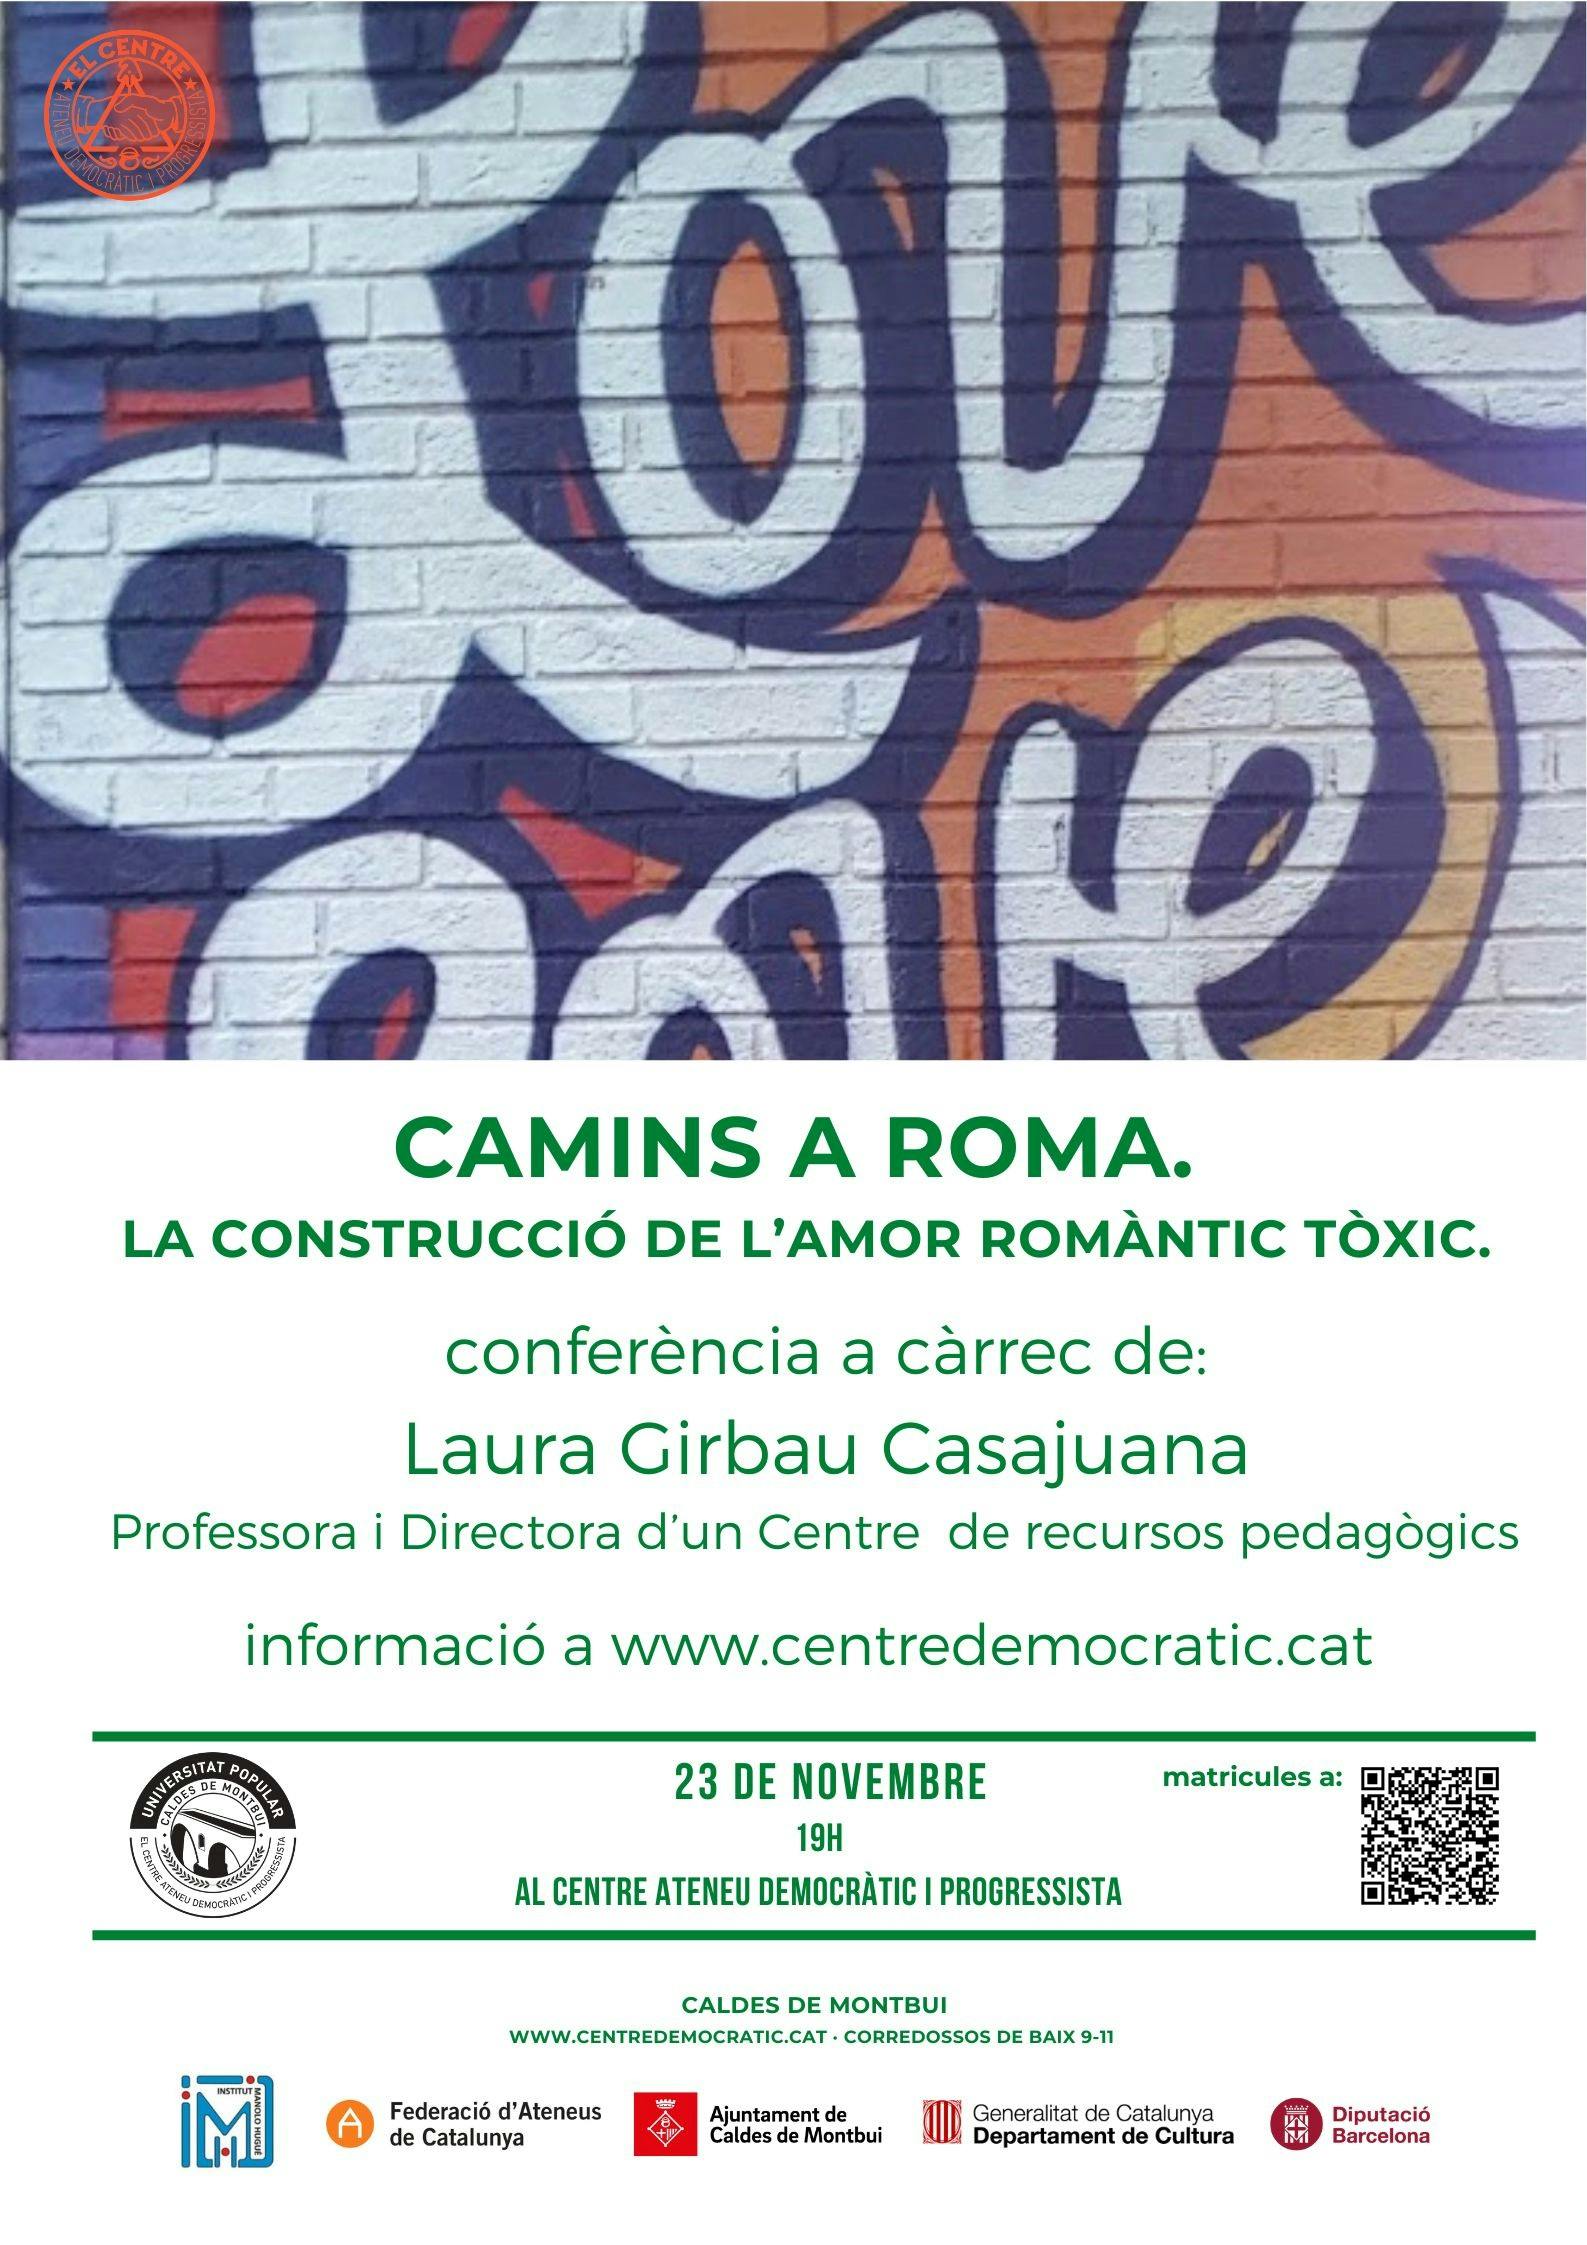 Conferència "Camins a Roma. La construcció de l'amor romàntic tòxic"